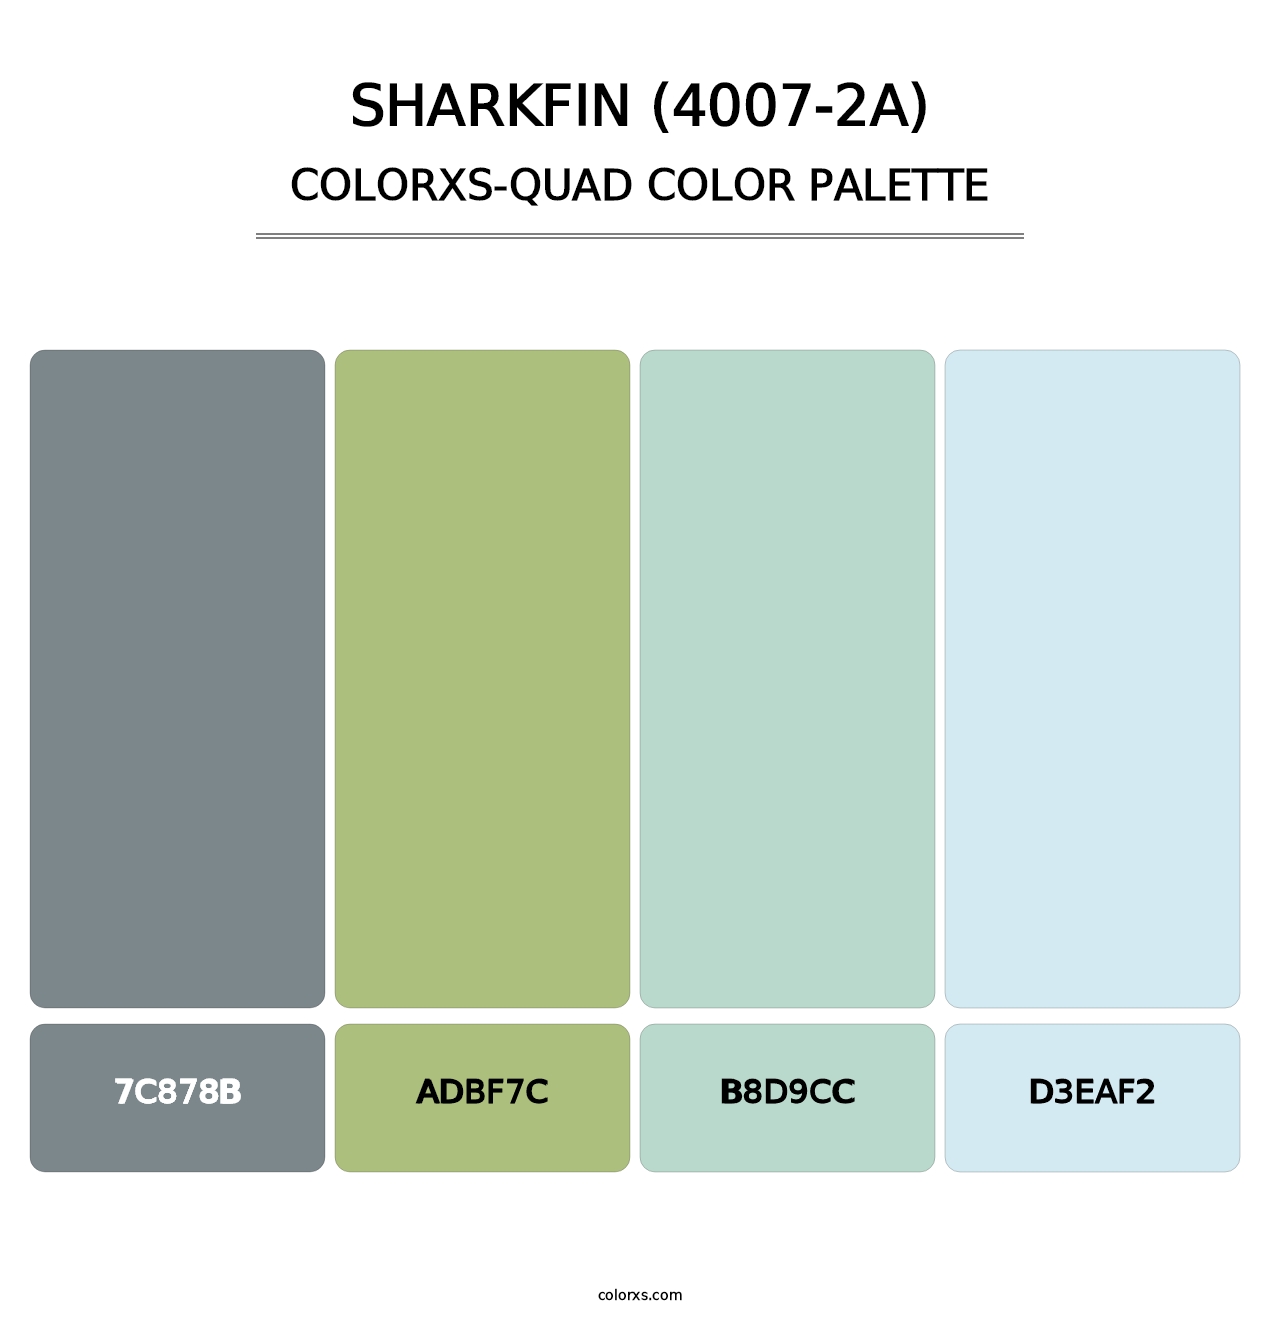 Sharkfin (4007-2A) - Colorxs Quad Palette